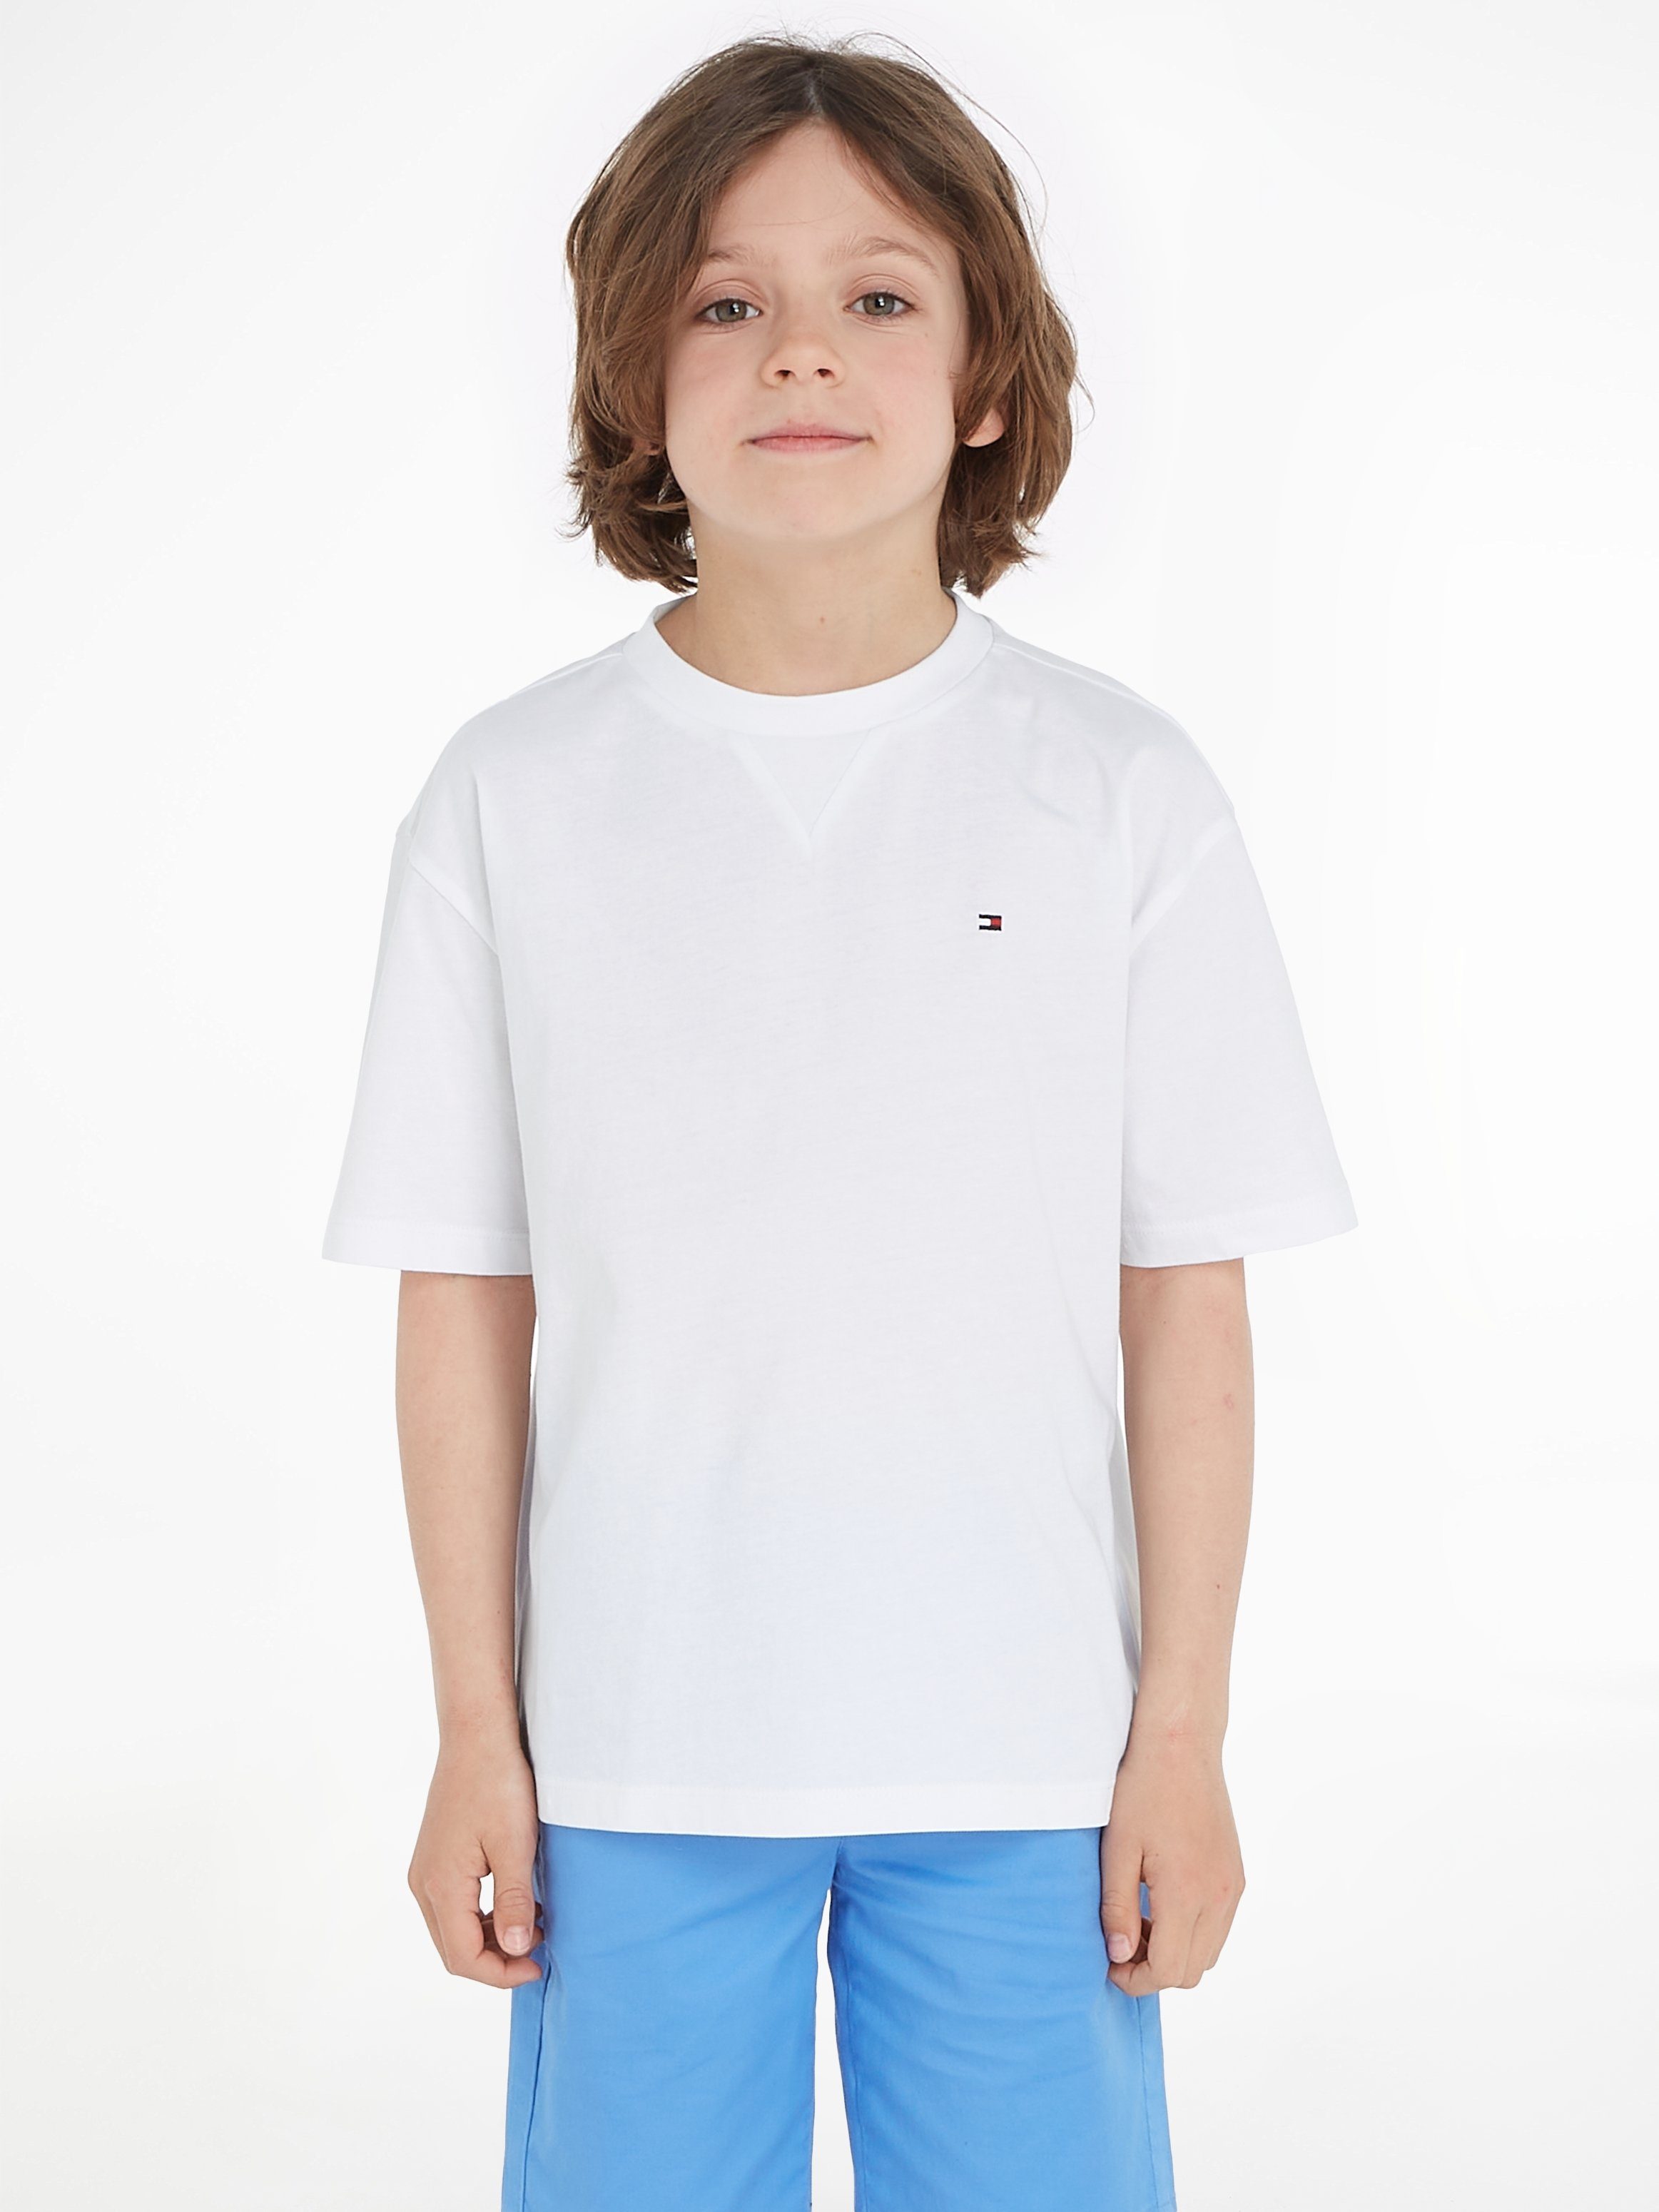 Tommy Hilfiger T-Shirt ESSENTIAL TEE S/S Baby bis 2 Jahre white